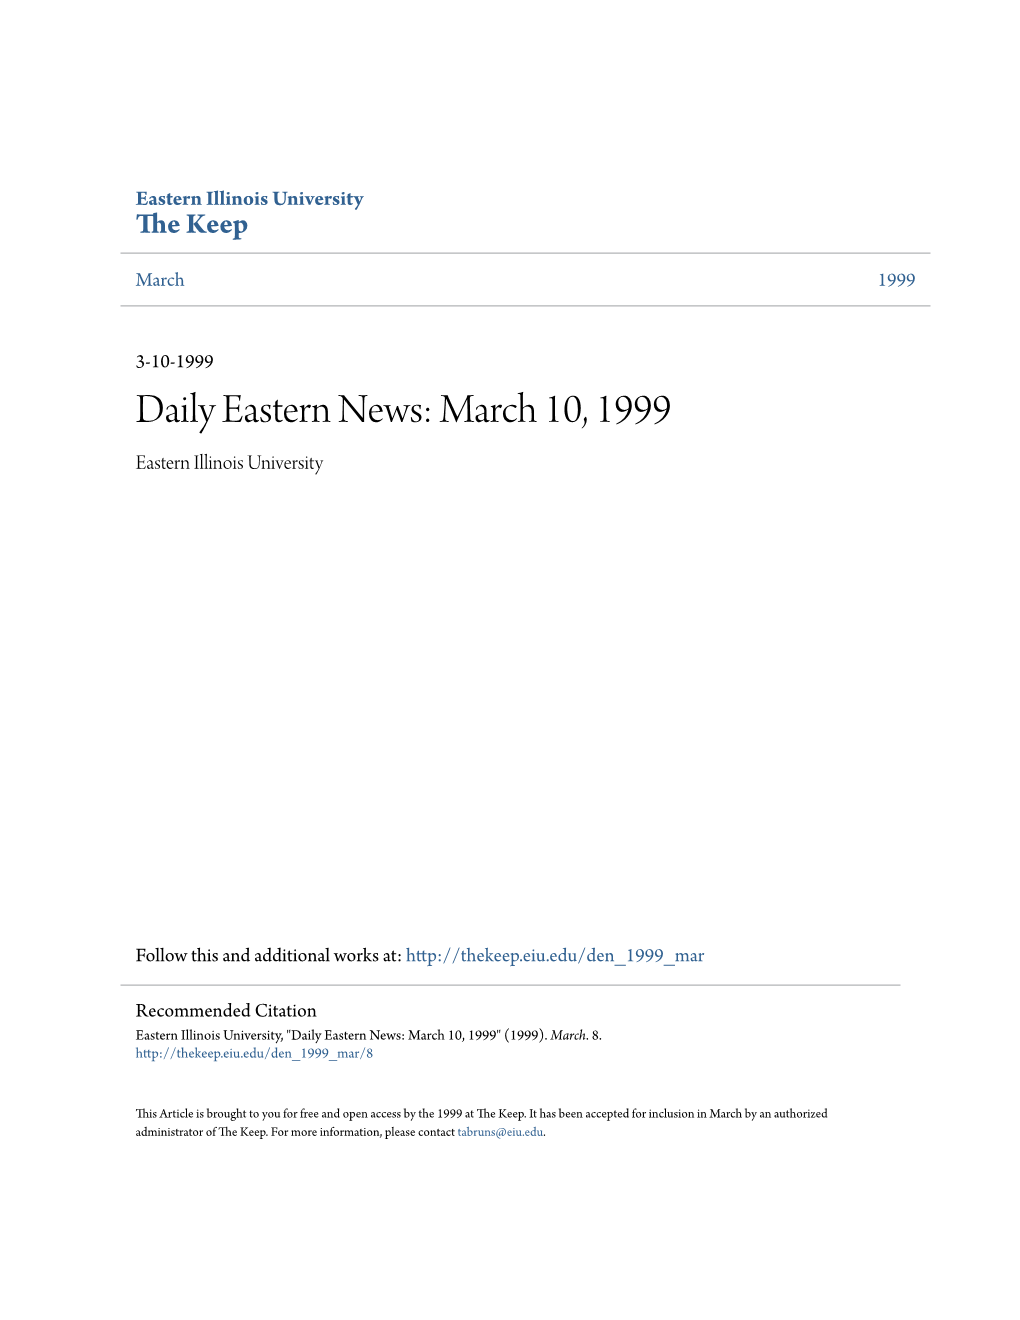 March 10, 1999 Eastern Illinois University